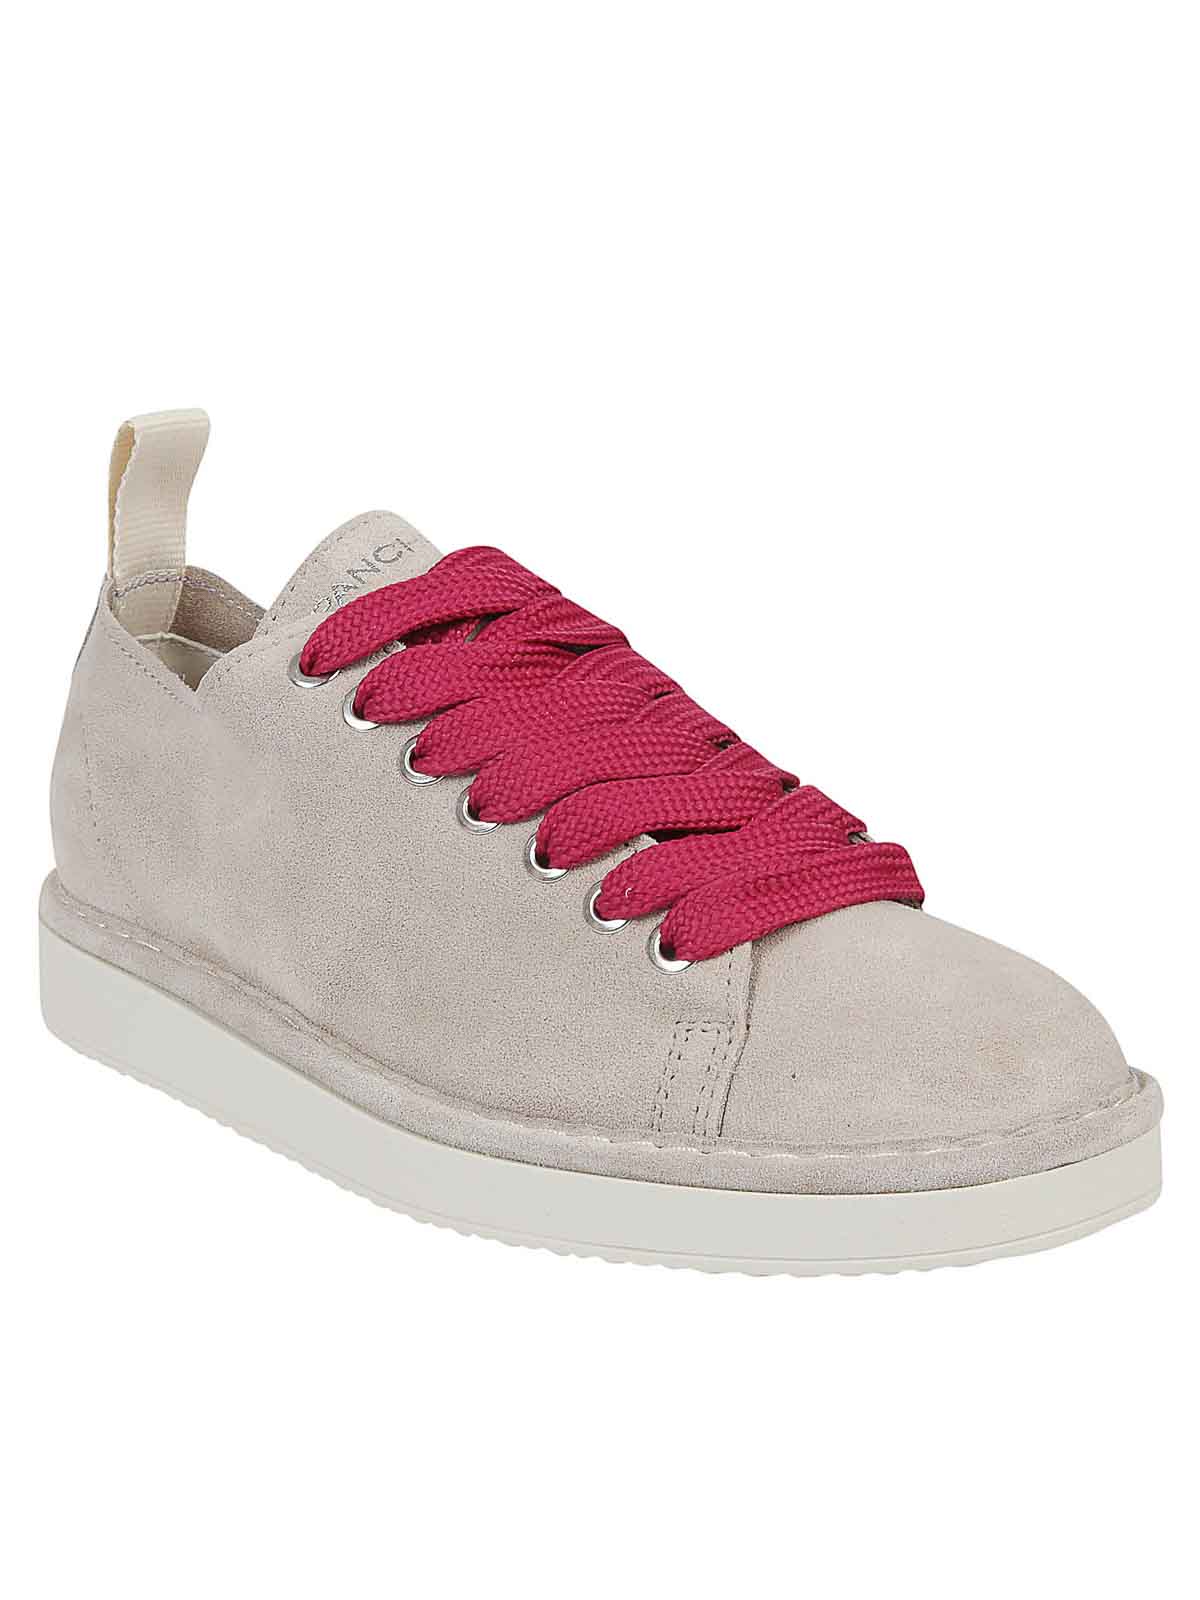 Shop Pànchic Zapatos Con Cordones - Gris In Grey